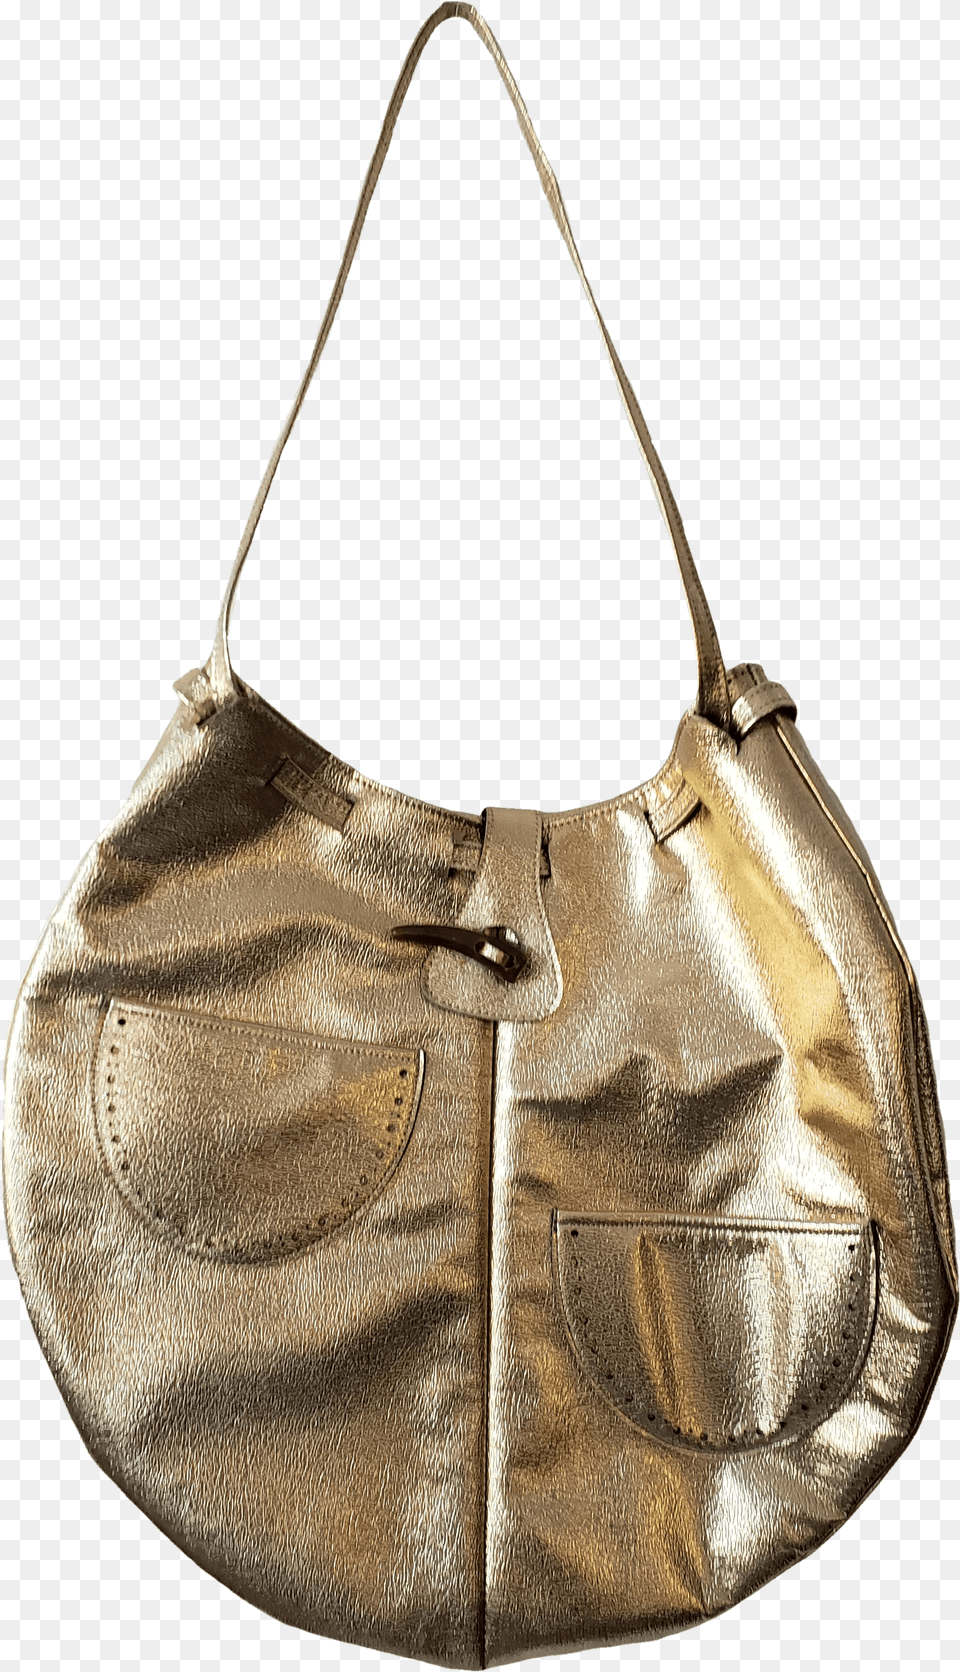 Round Gold Bag With Eyelet Pockets Shoulder Bag, Accessories, Handbag, Purse Free Transparent Png